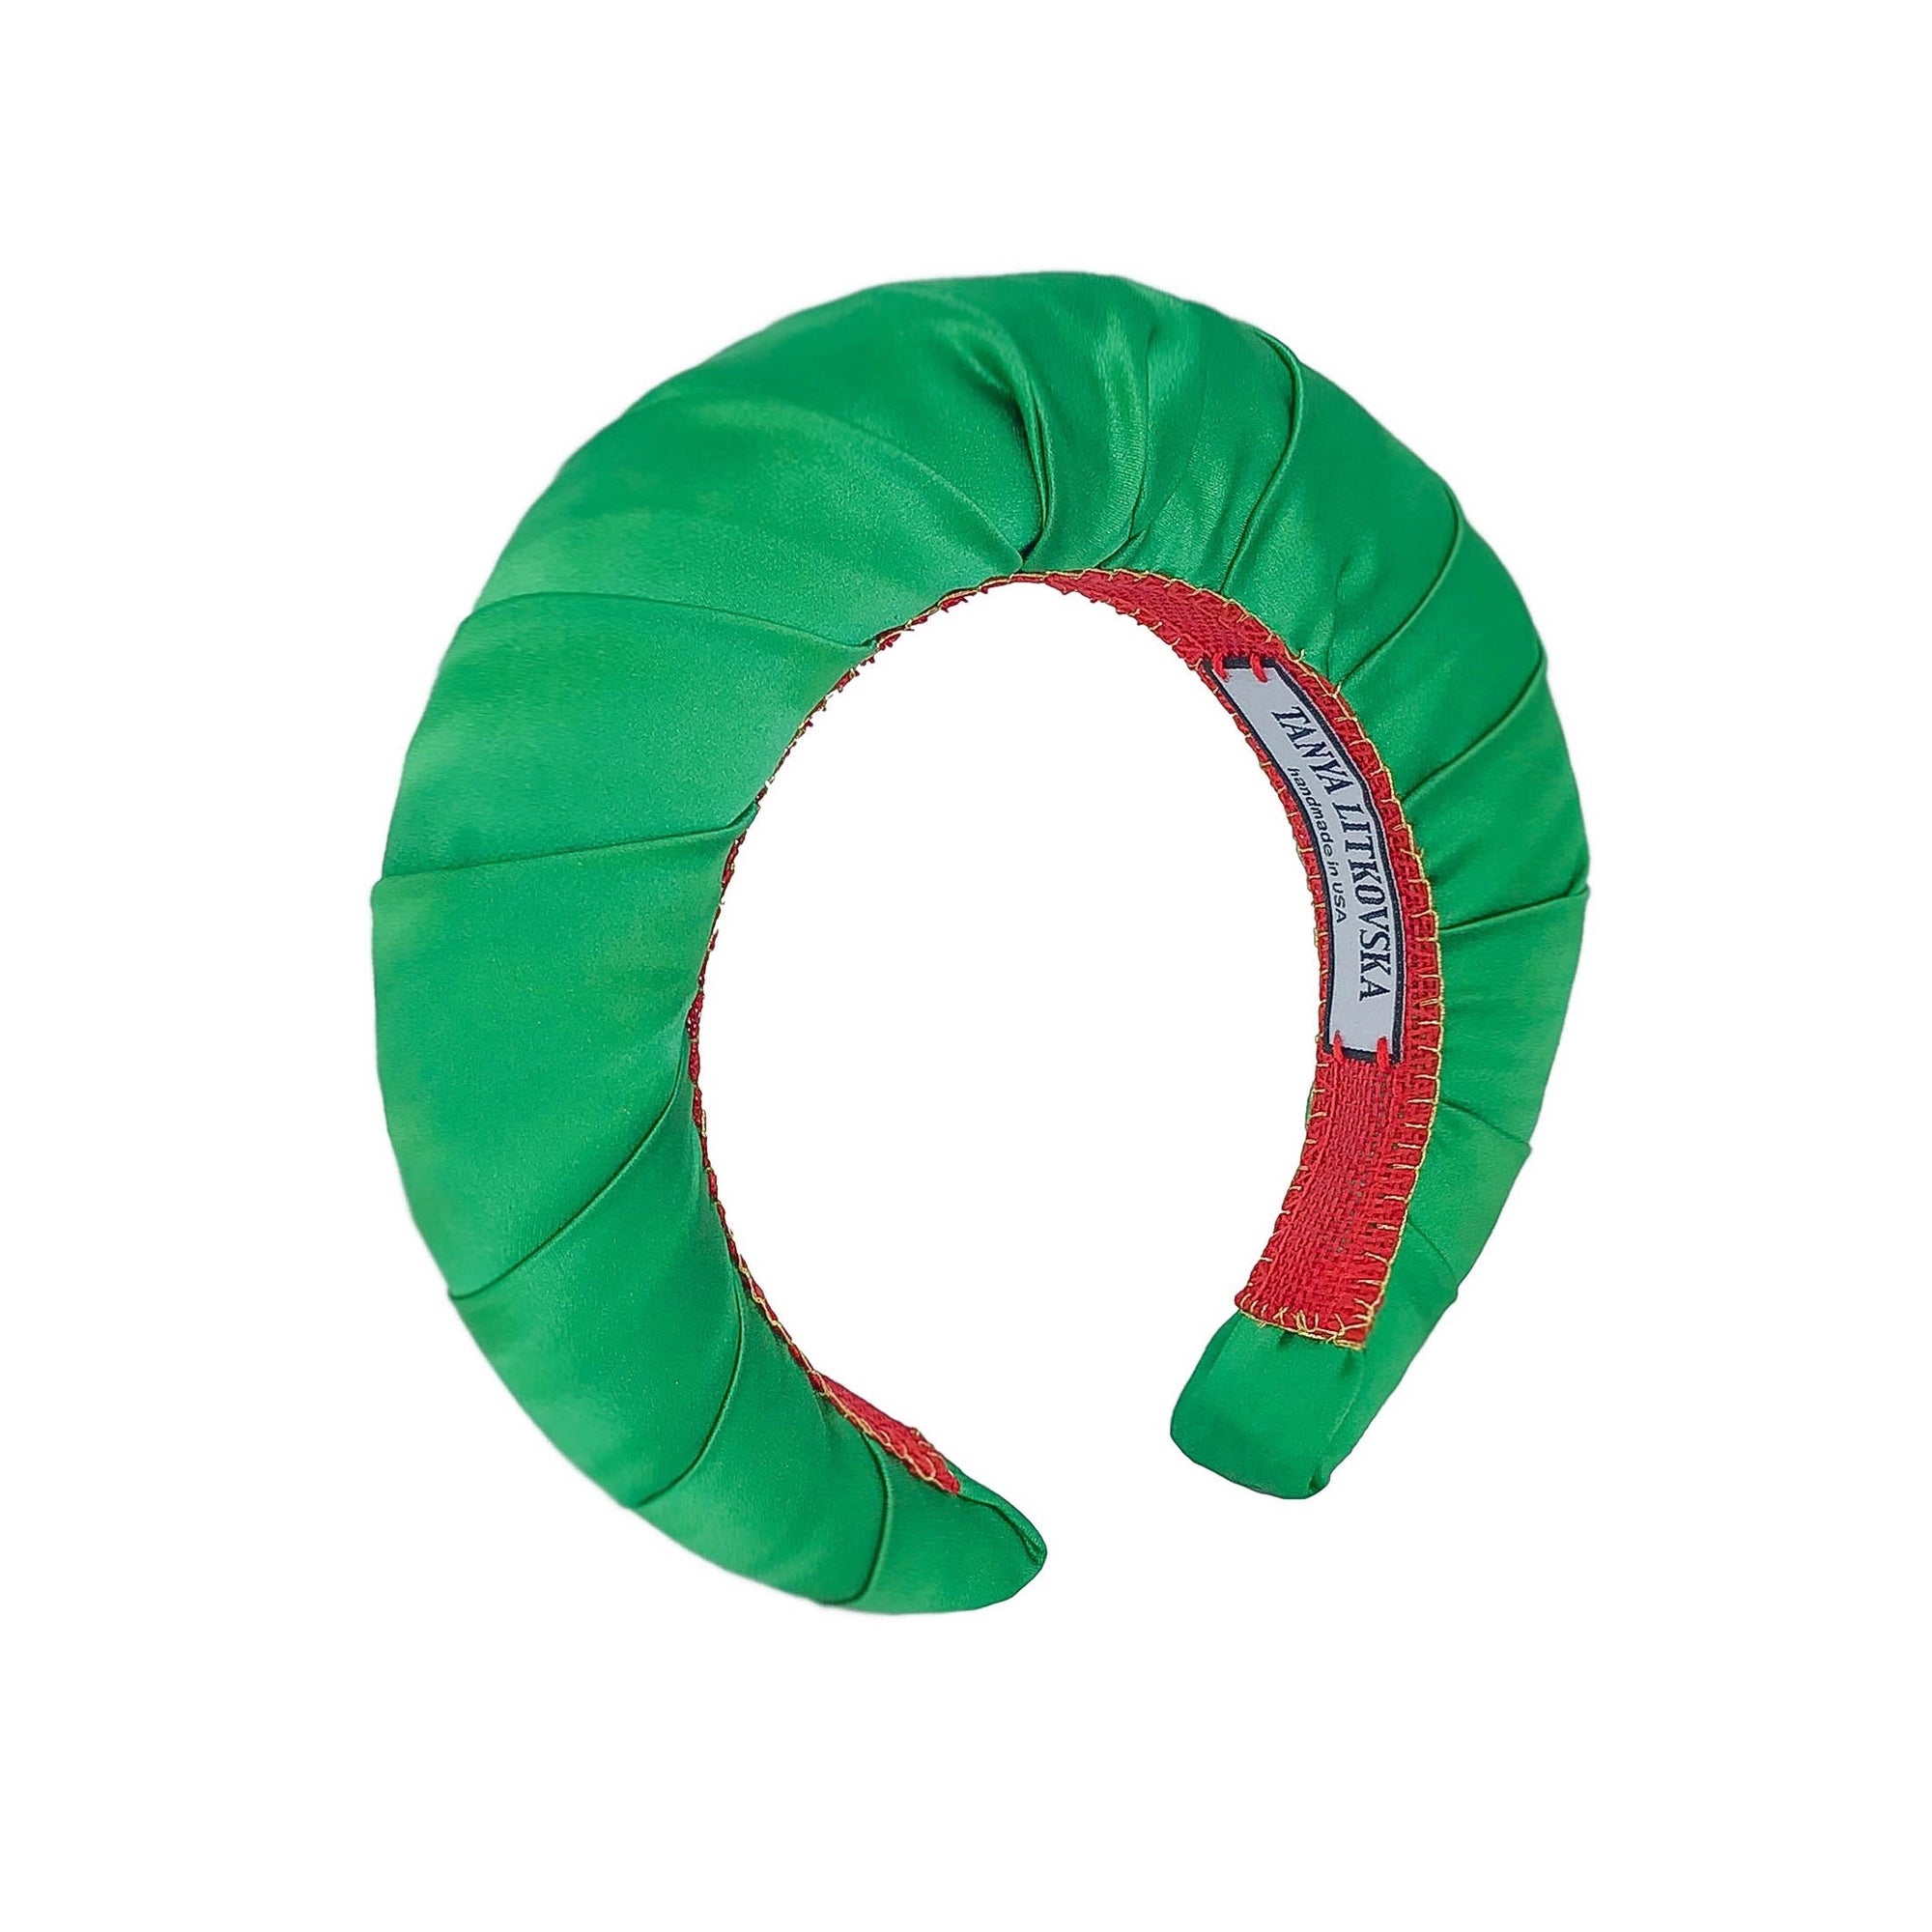 green headband | shop silk hair bands | 2019 headbands trend by tanya litkovska